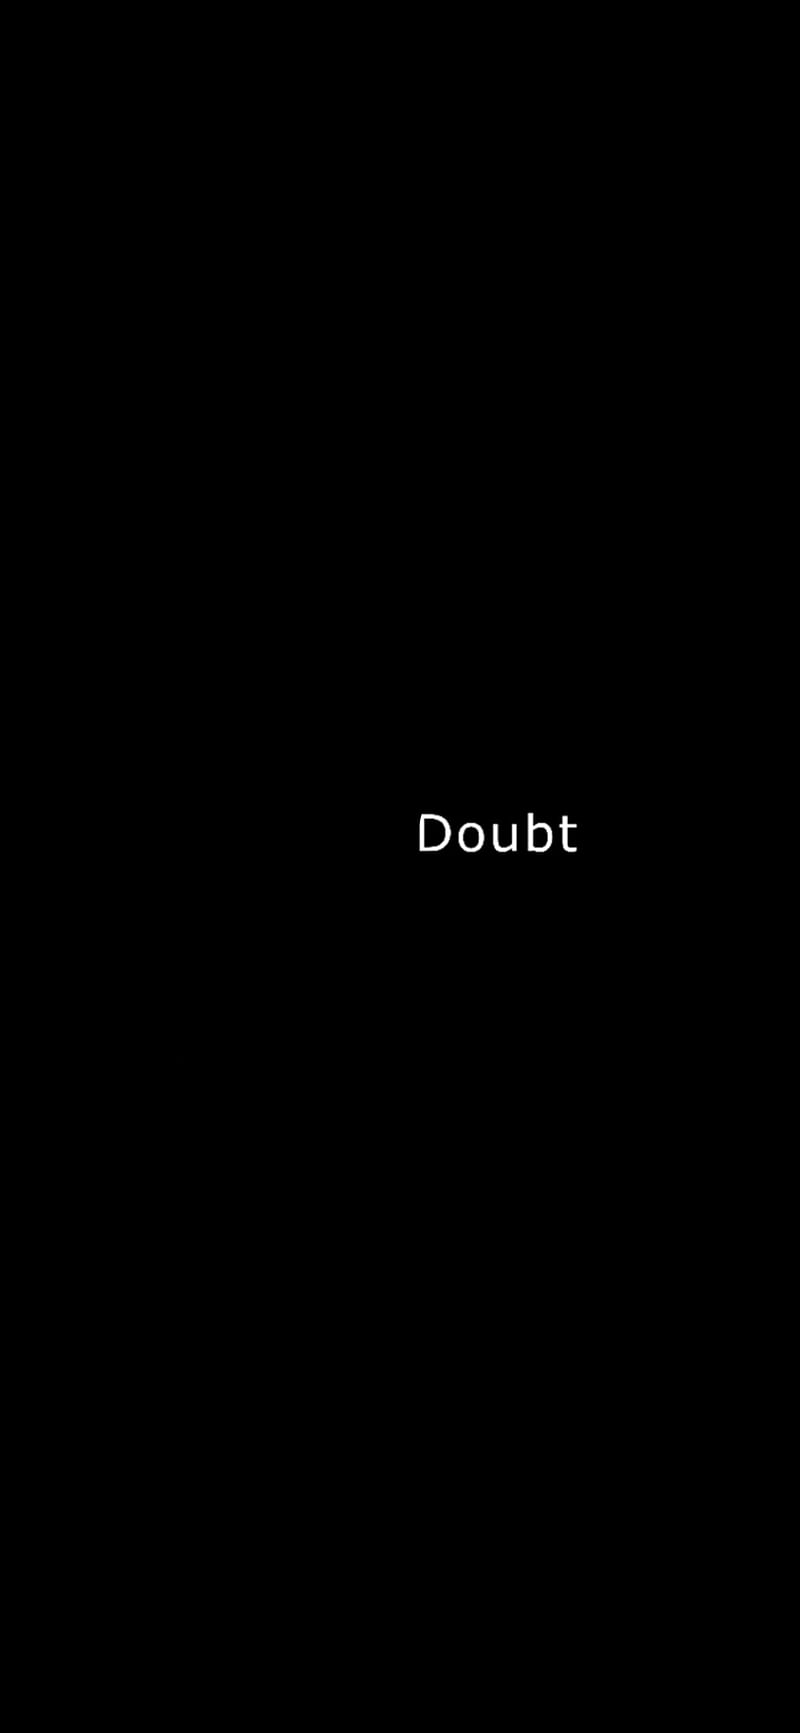 Doubt lyrics HD wallpapers  Pxfuel